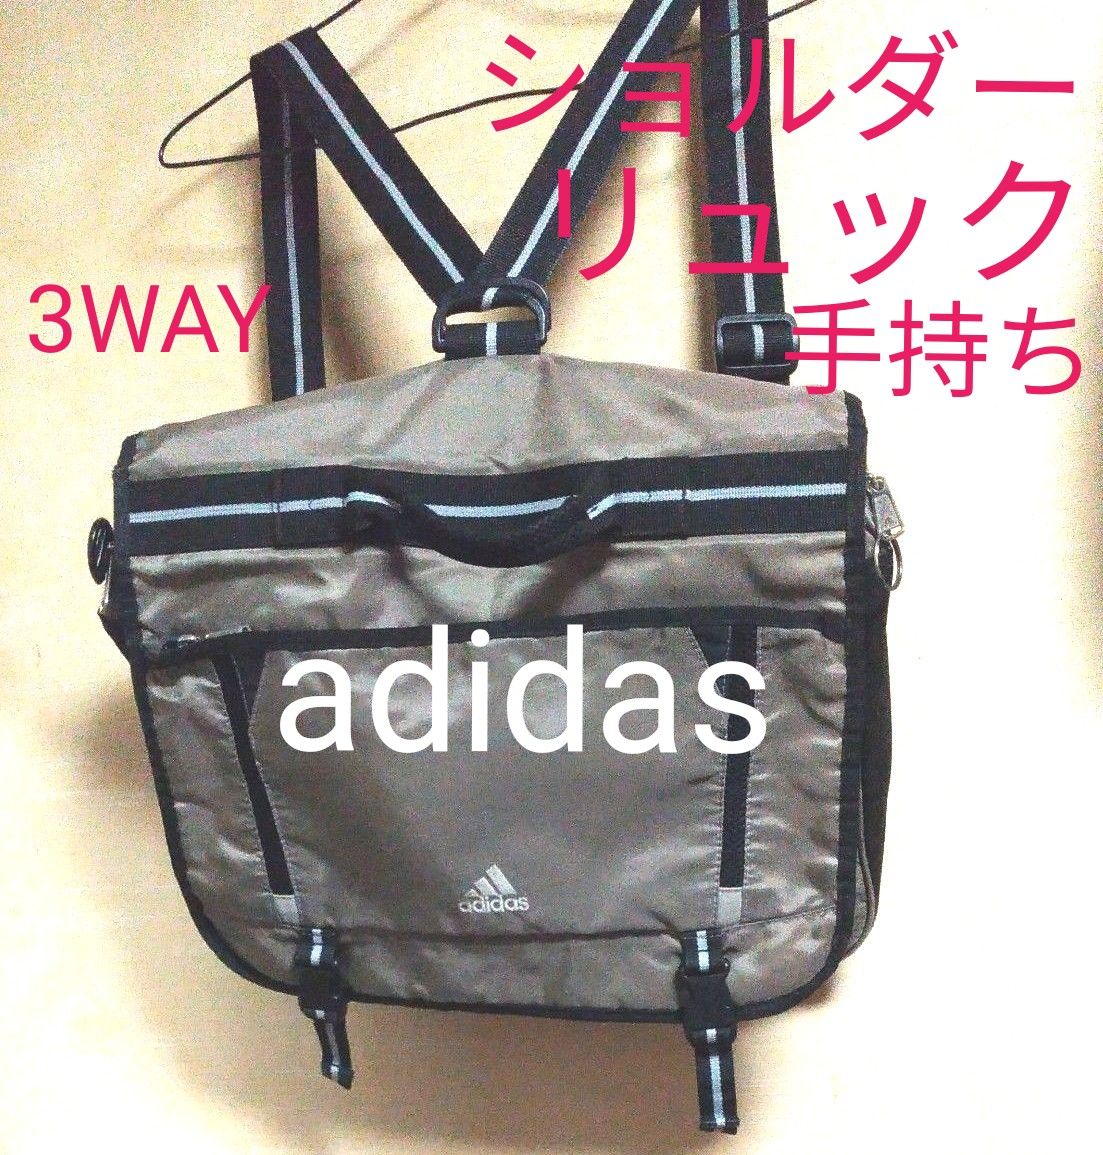 ☆アディダス adidas 3wayバッグ ショルダーバッグ リュックサック B4 横型リュック ロゴ グレー×黒 かばん 鞄